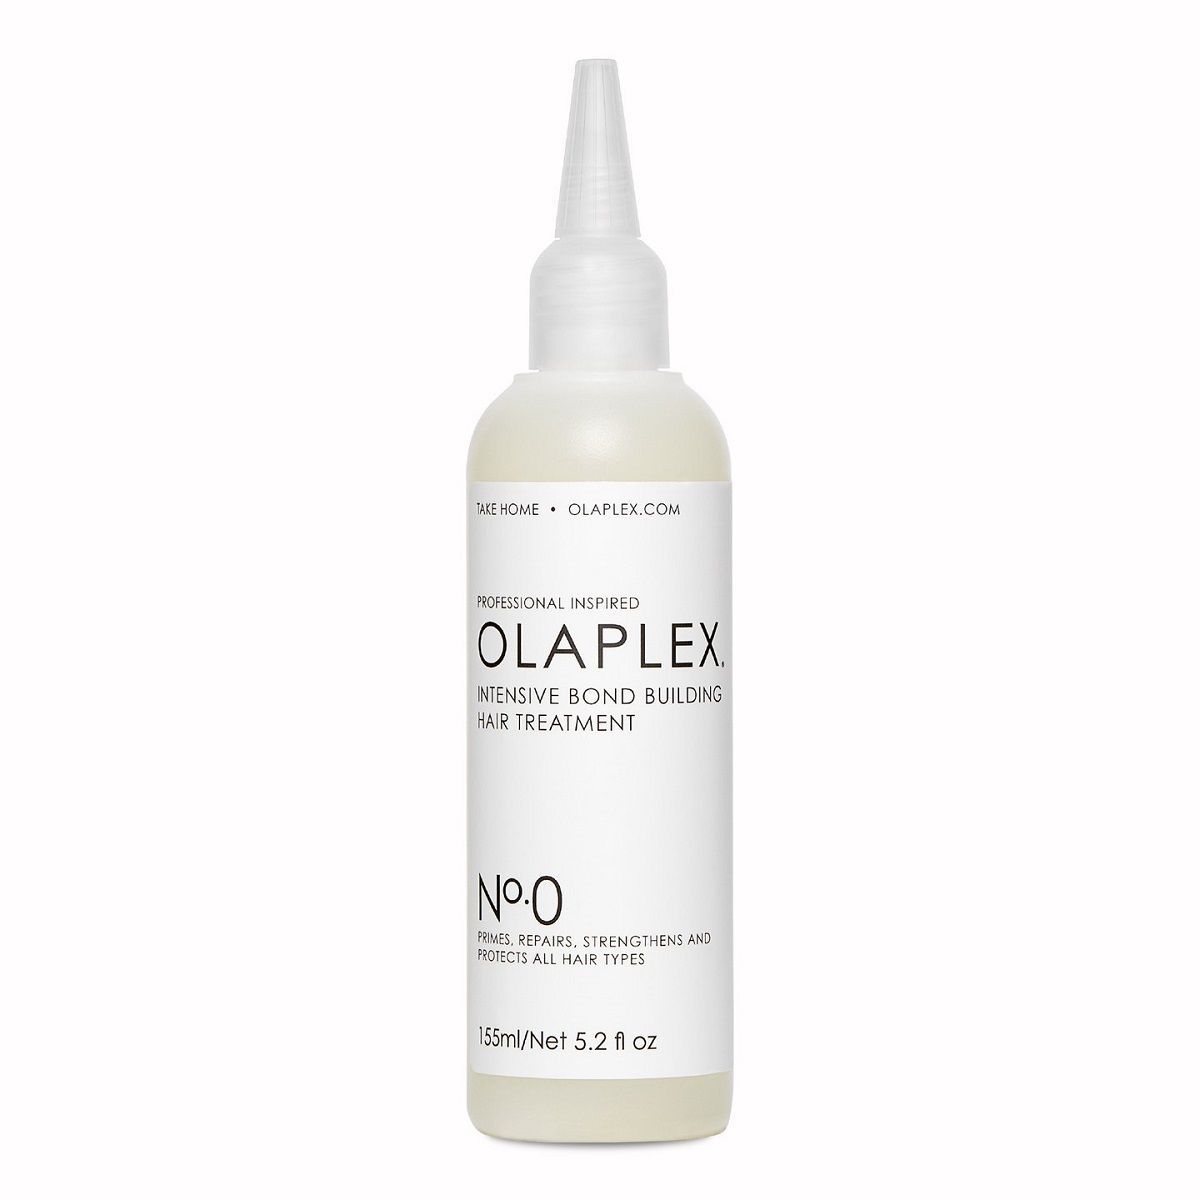 Olaplex No.0 Bond Building Hair Treatment - Интенсивный уход-праймер «Активное восстановление» 155 мл Olaplex (США) купить по цене 2 385 руб.